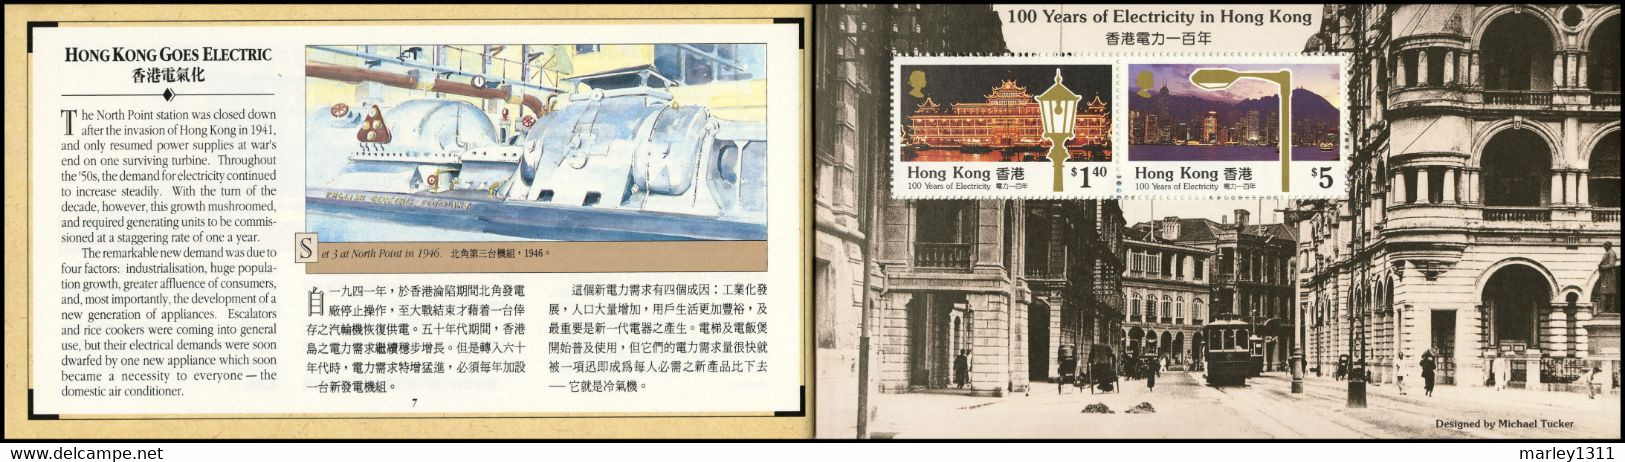 HONG KONG (1990) Carnet de prestige n°621 Centenaire de l'électricité à Hong Kong